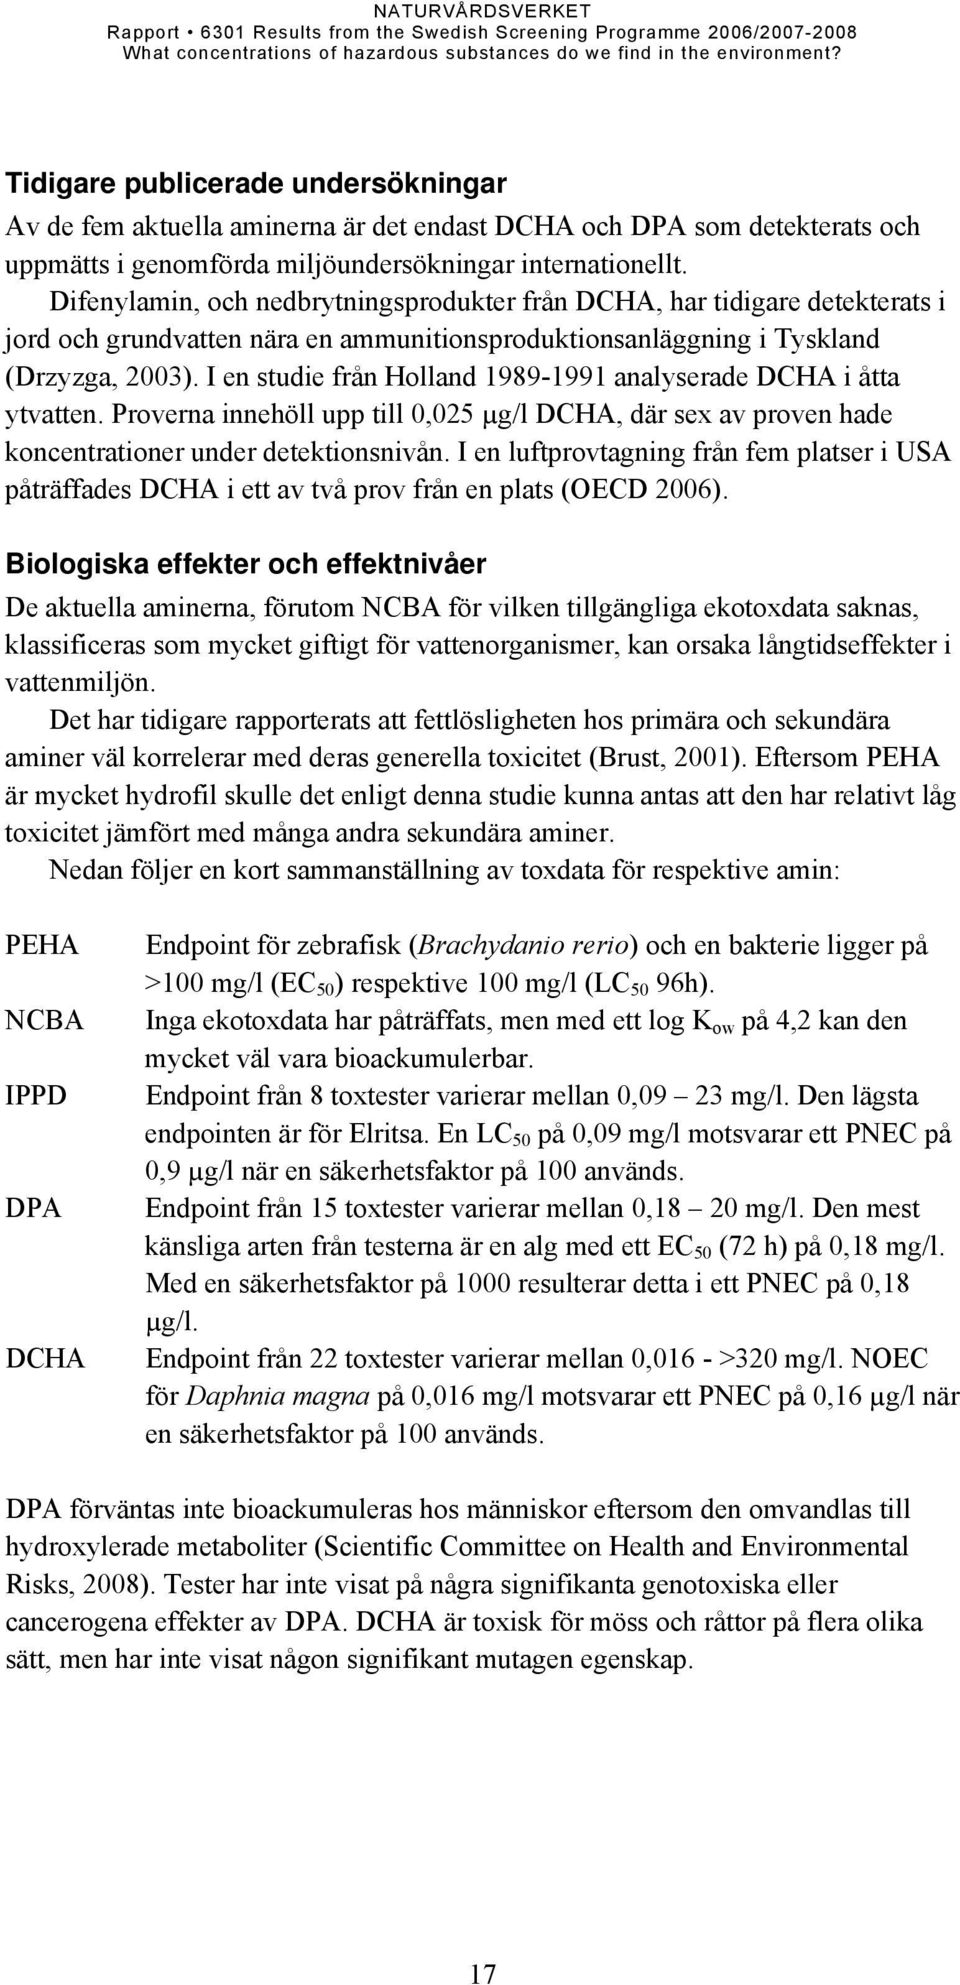 I en studie från Holland 1989-1991 analyserade DCHA i åtta ytvatten. Proverna innehöll upp till 0,025 µg/l DCHA, där sex av proven hade koncentrationer under detektionsnivån.